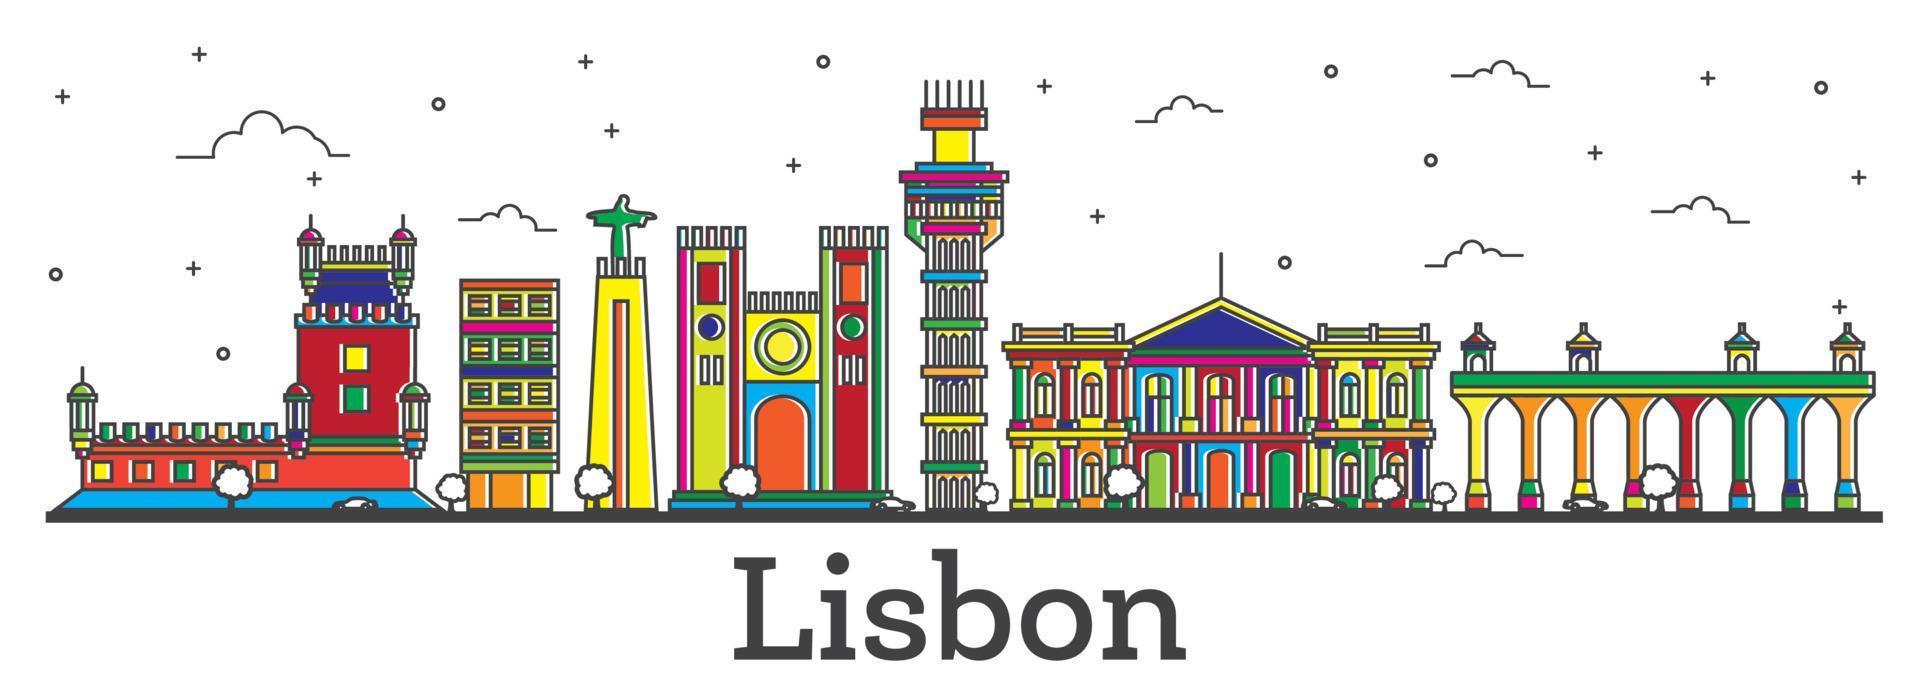 delineie o horizonte da cidade de lisboa portugal com edifícios coloridos isolados em branco. vetor